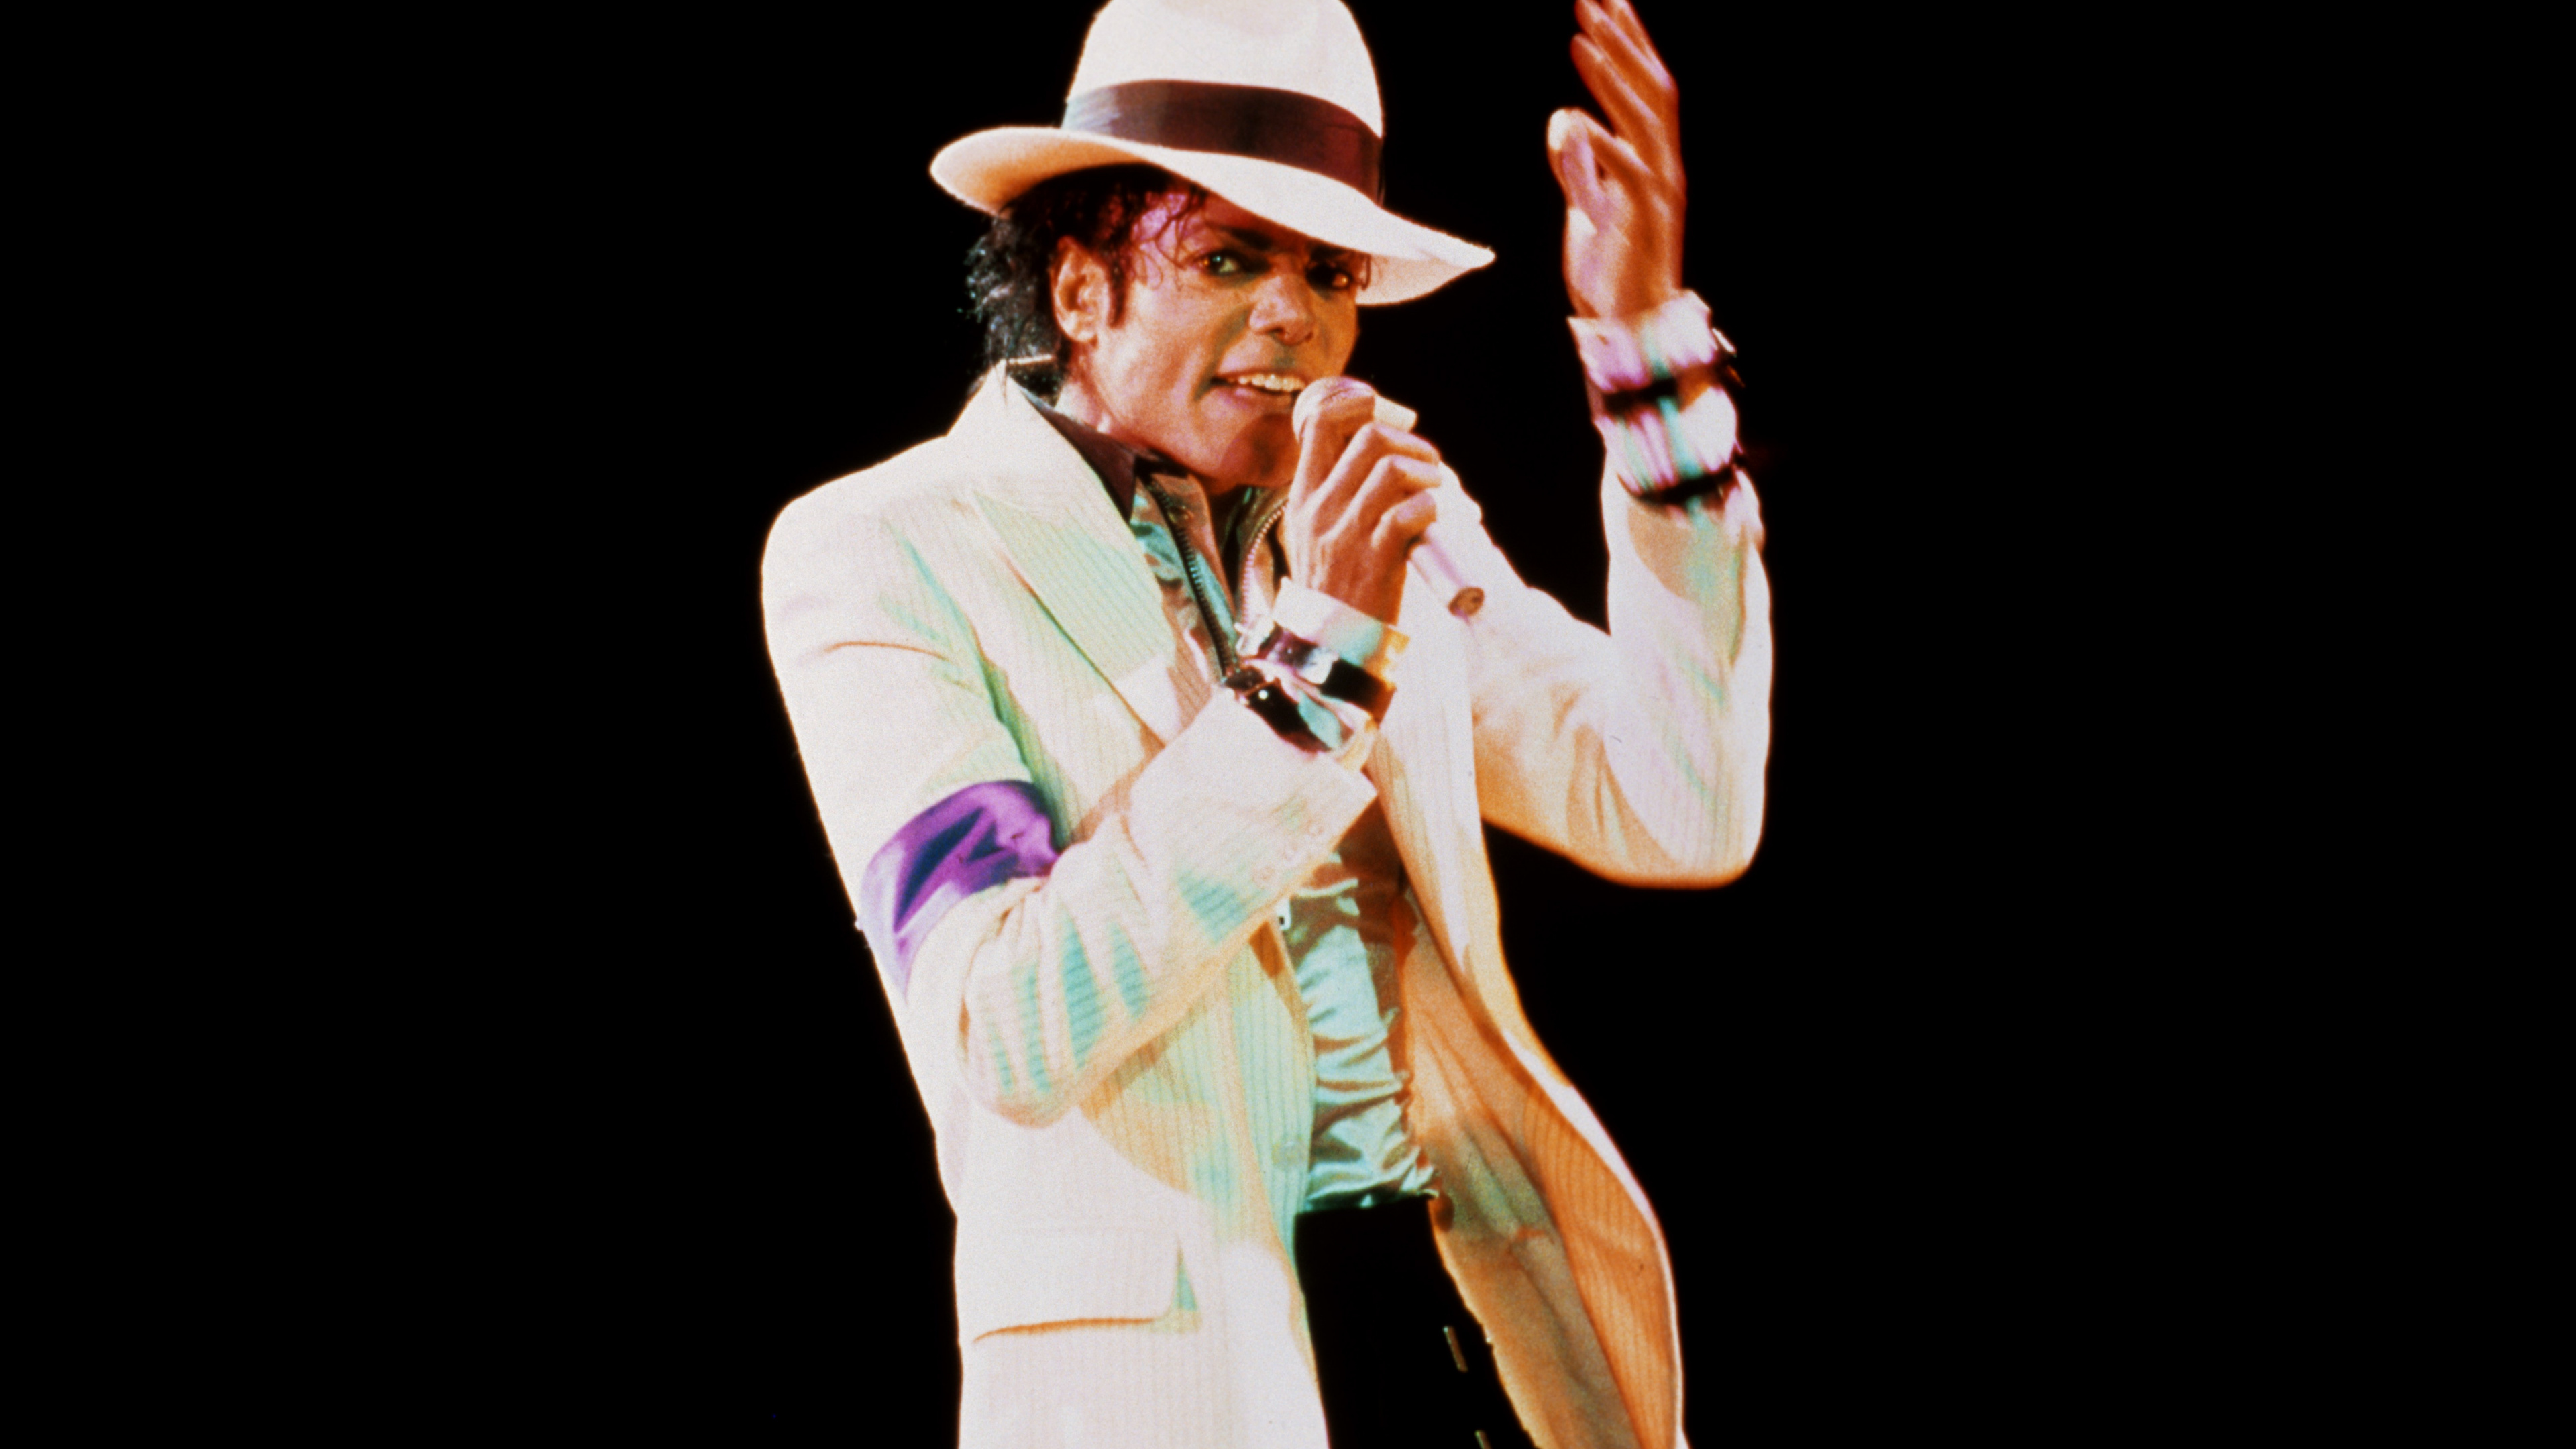 Michael Jackson, Bad, Performance, la Musique de L'artiste, Arts de la Scène. Wallpaper in 3840x2160 Resolution